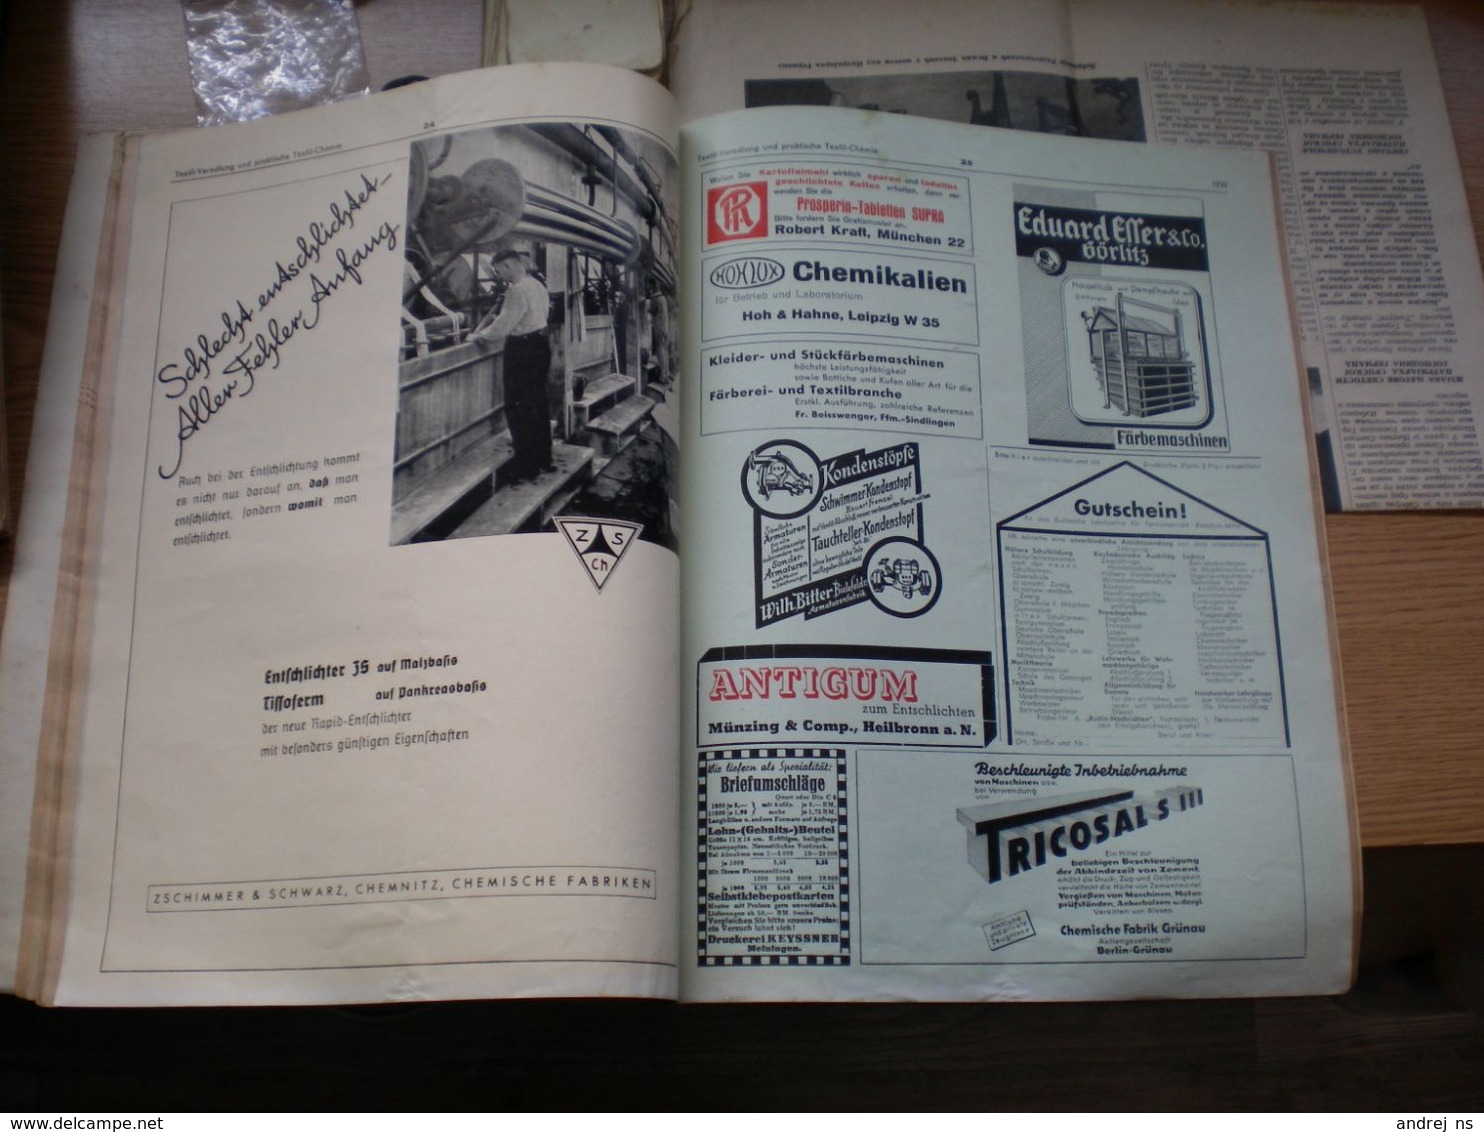 Der Spinner Und Weber Textil Betriebt Hartmann Streichgarn Ringspinnmaschine Chemnitz 1939 - Catálogos